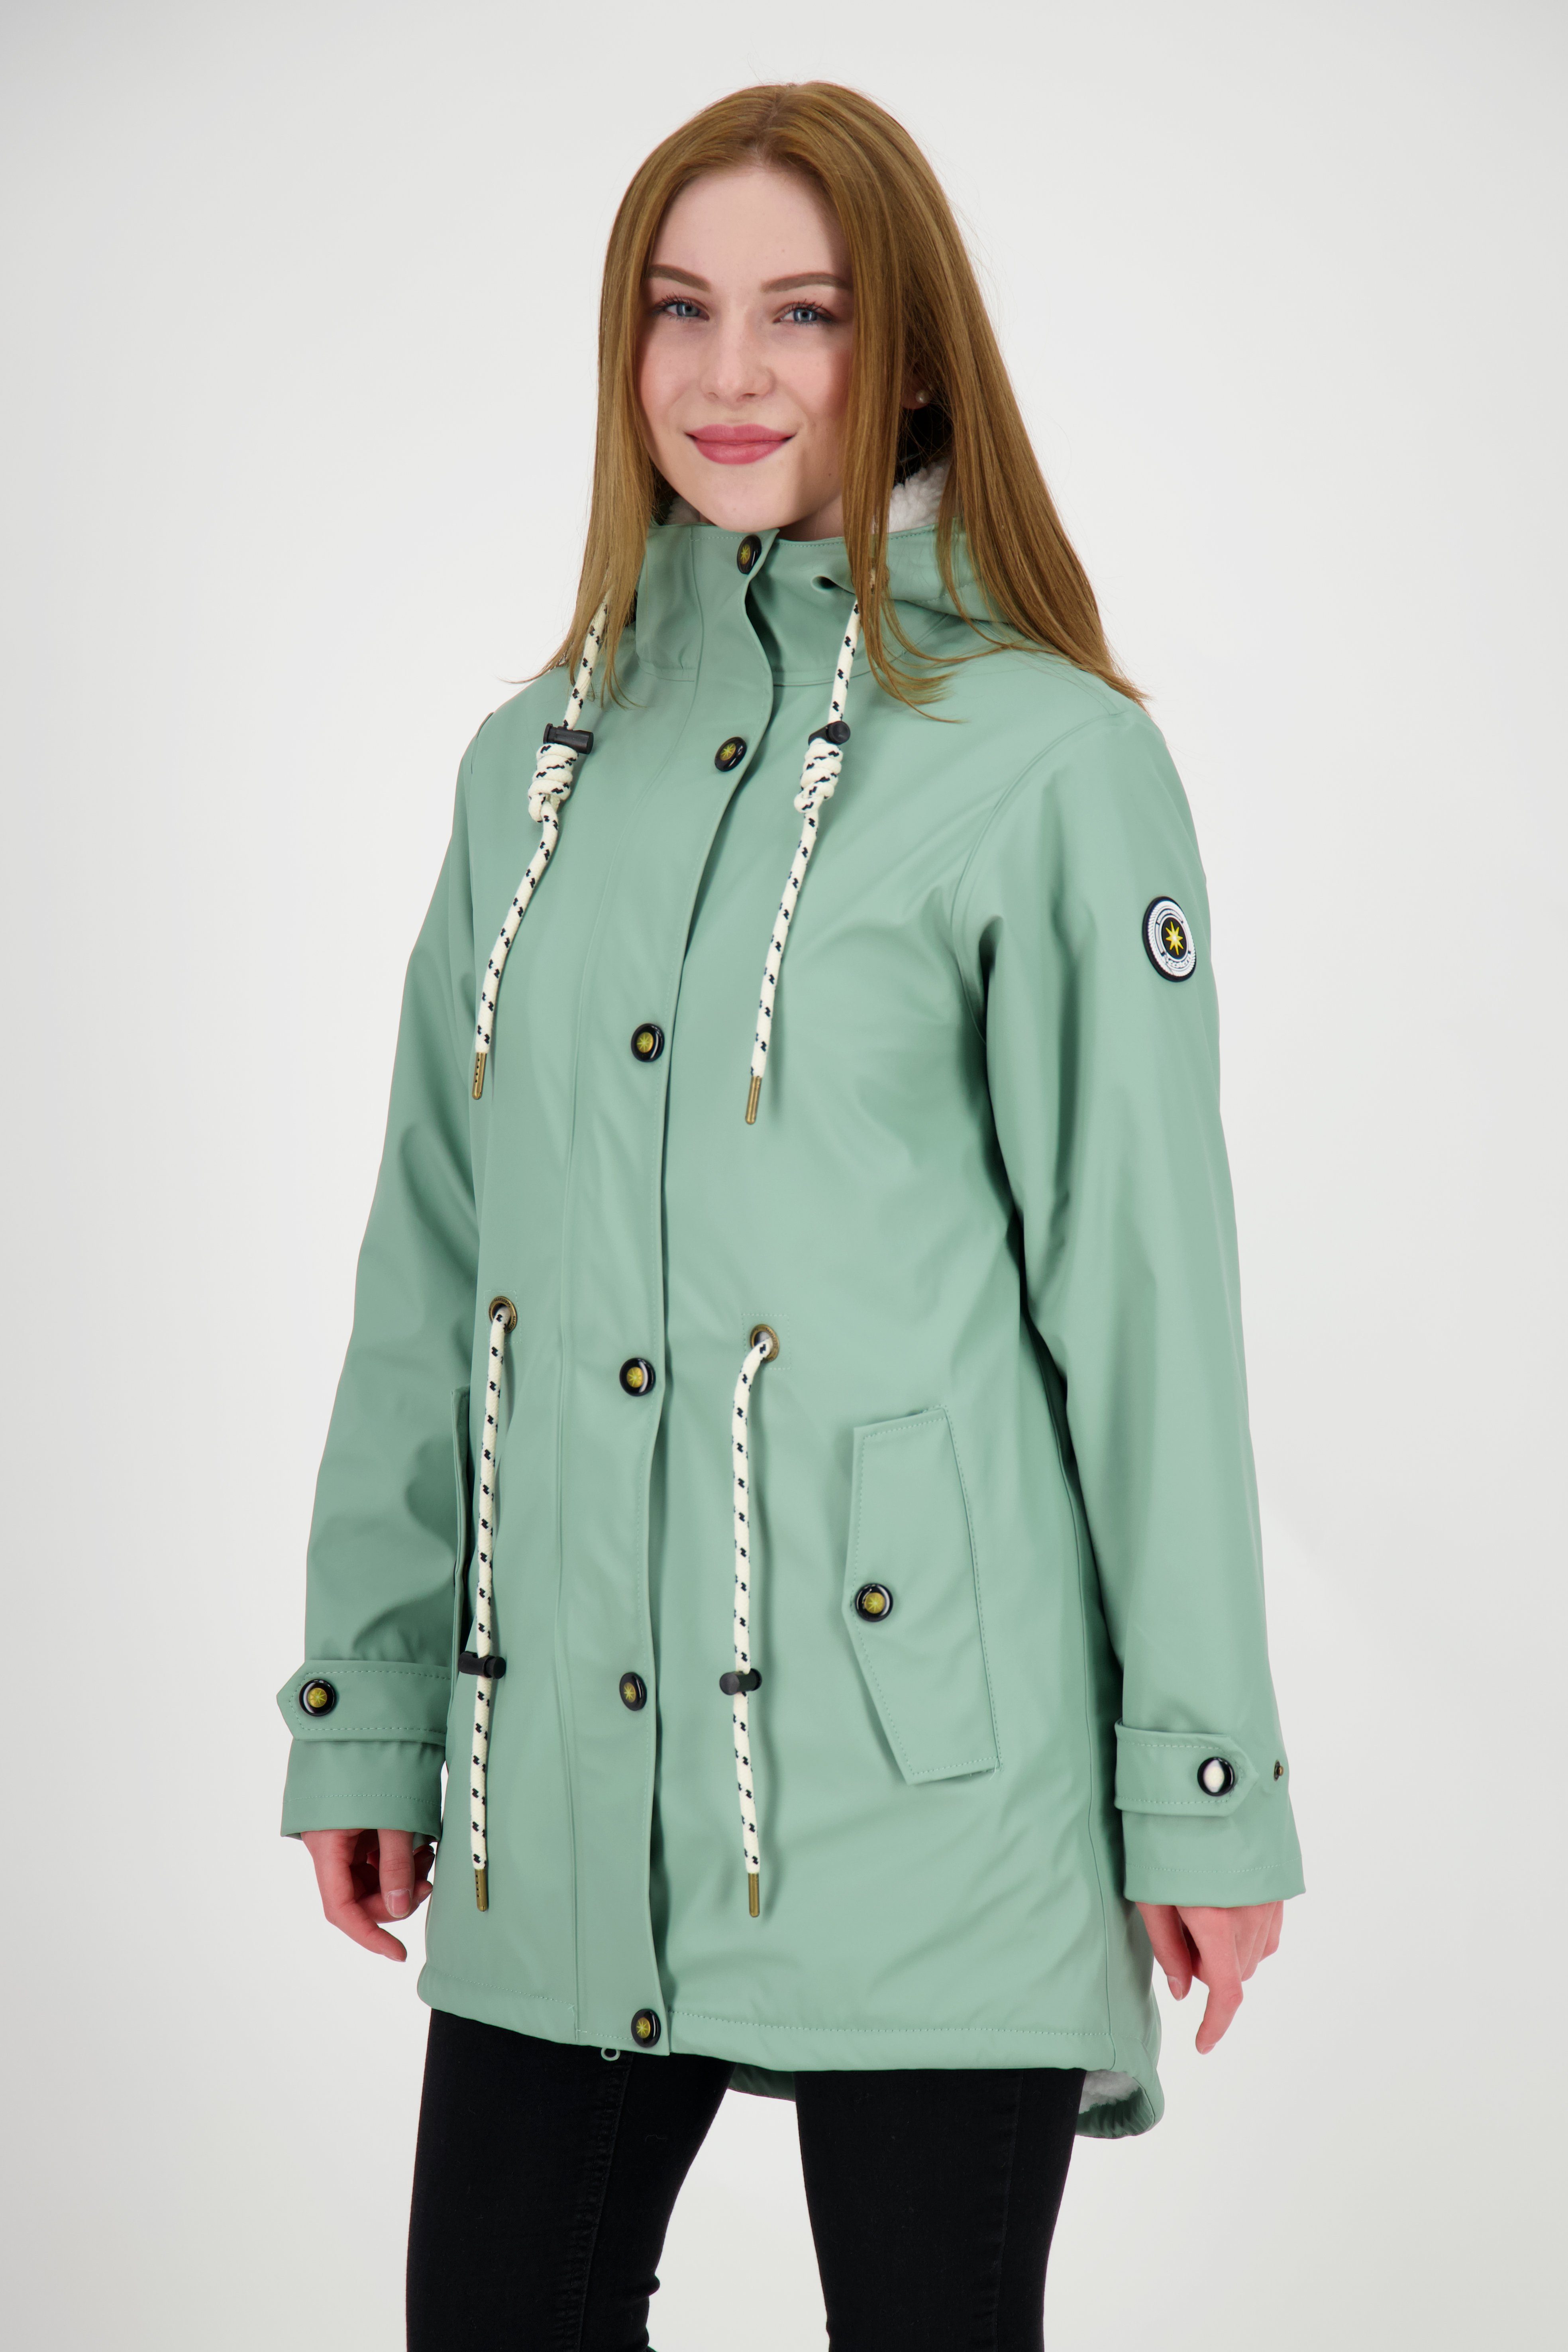 DEPROC Active Regenjacke #ankergluttraum auch ANKERGLUT NEW Größen Großen & Longjacket in Regenjacke CS WOMEN erhältlich slate